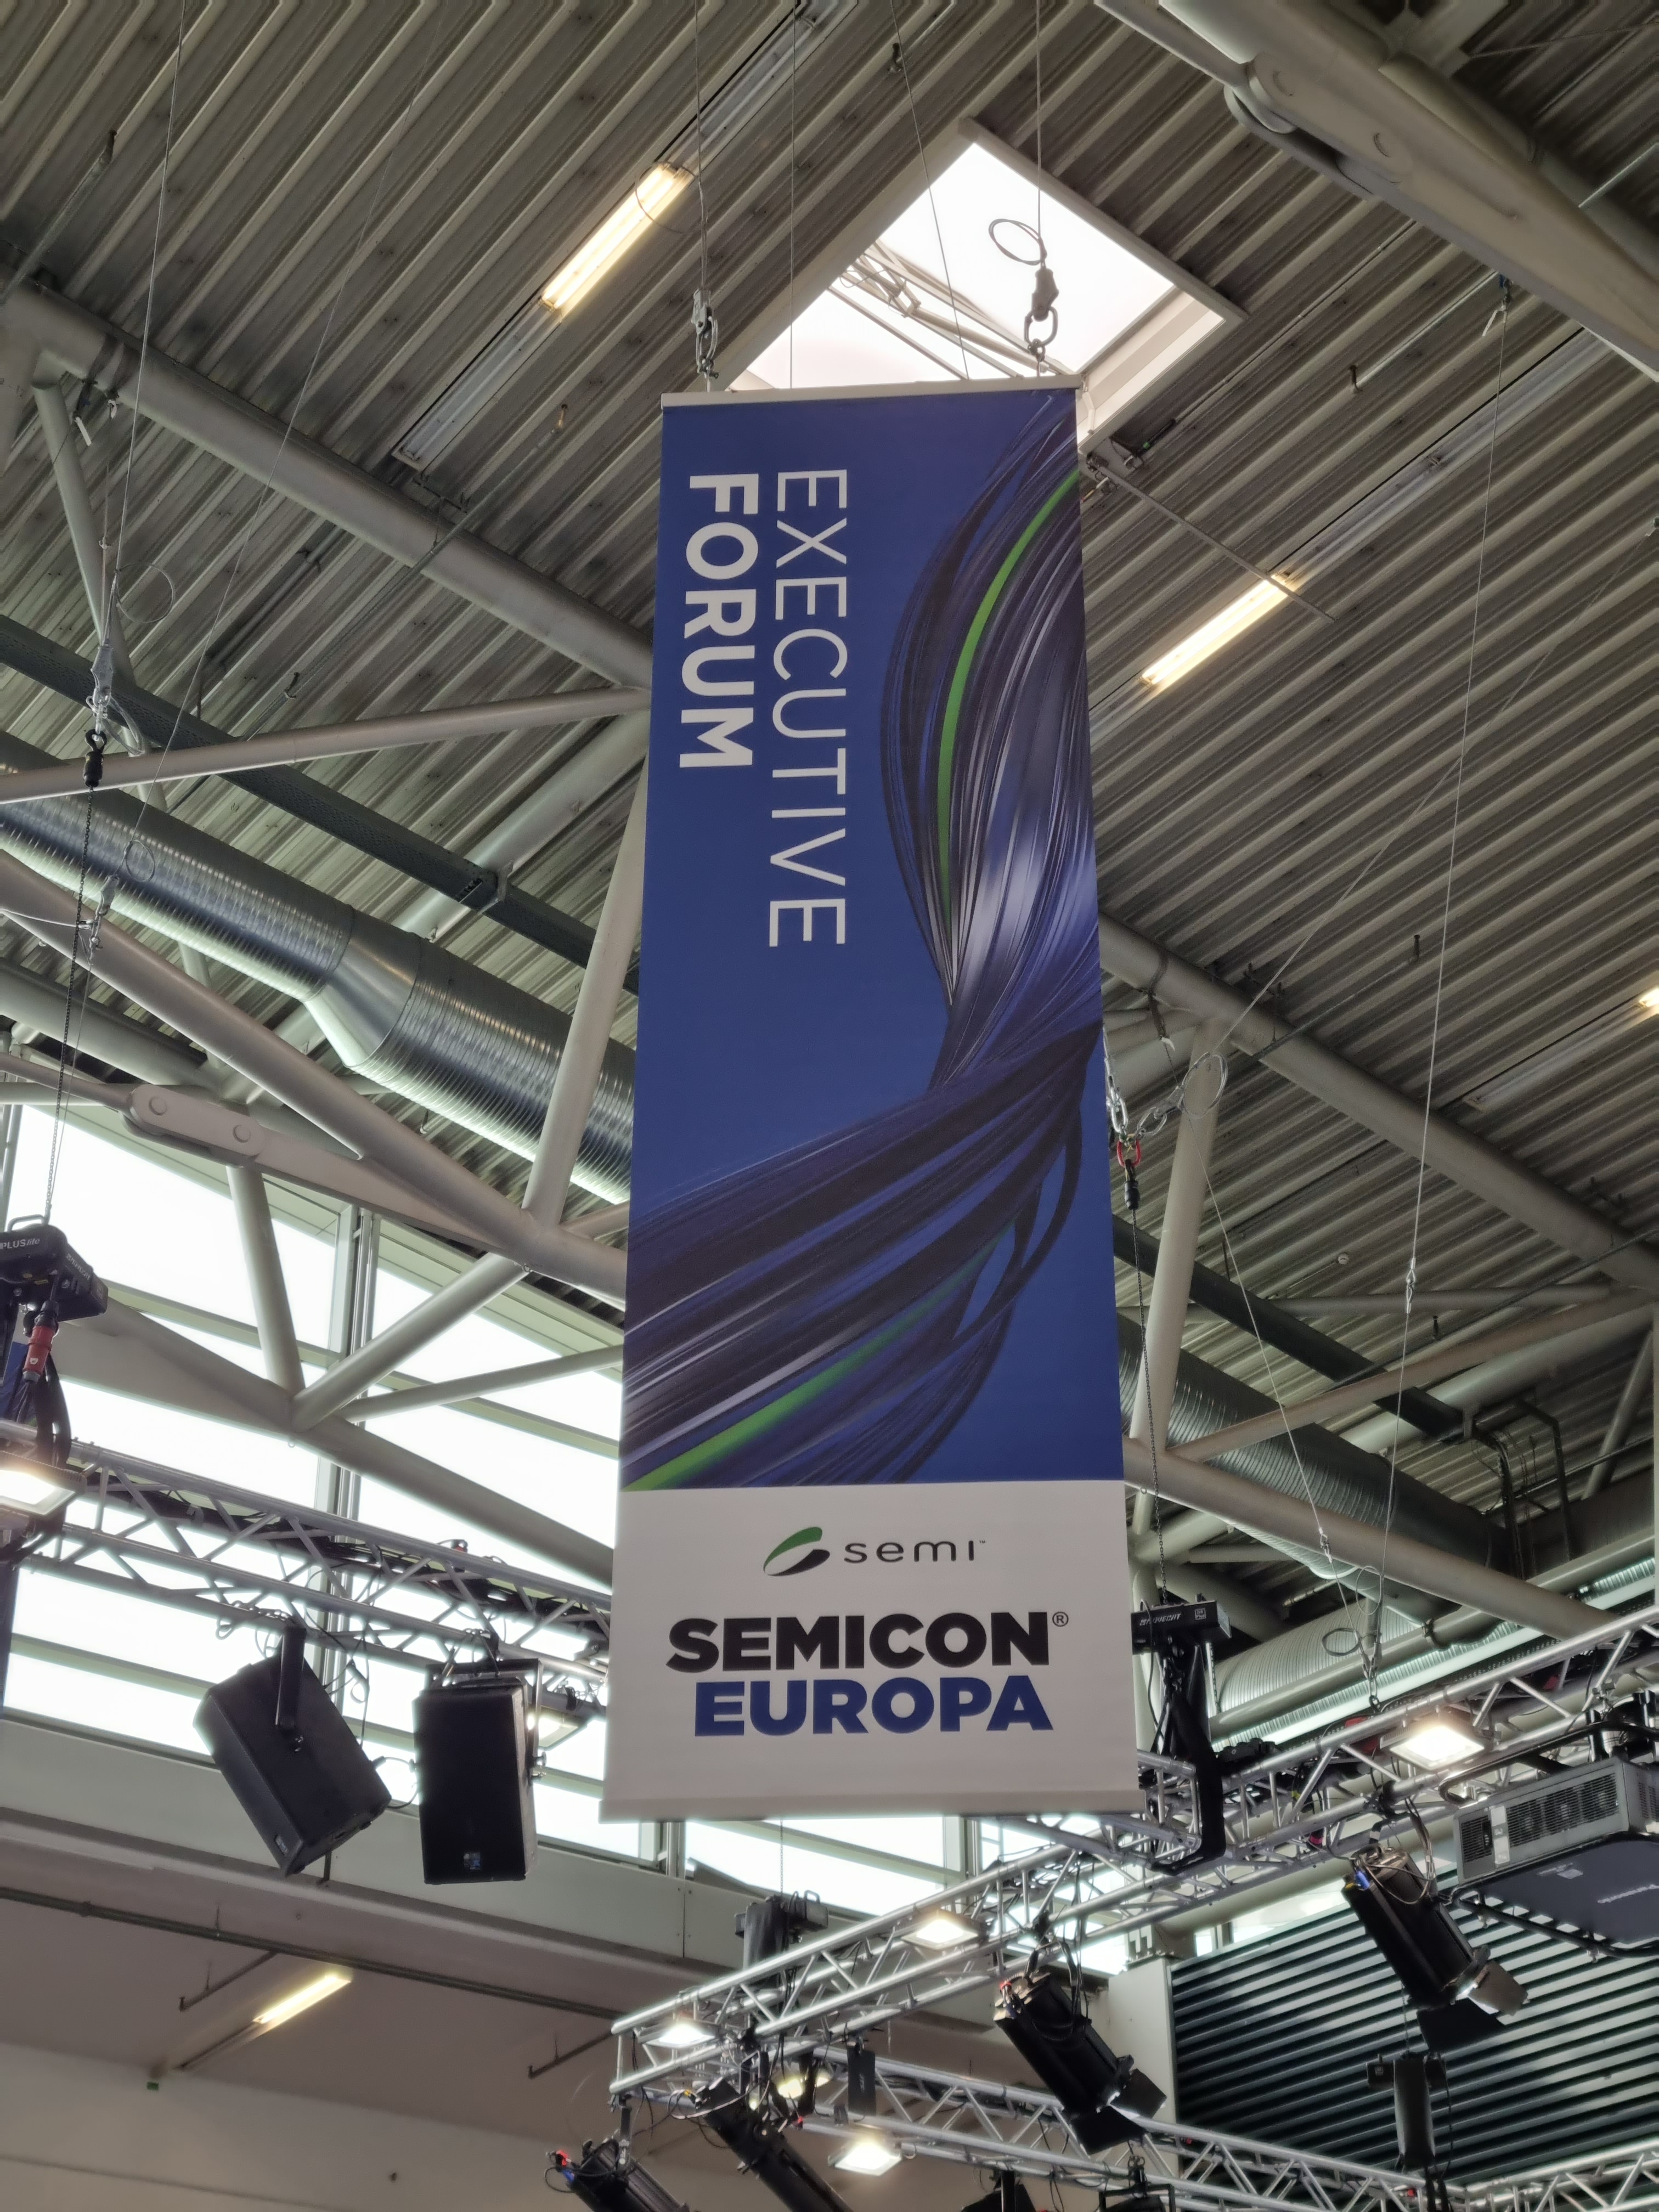 天井に掲げられたSEMICON Europa垂れ幕